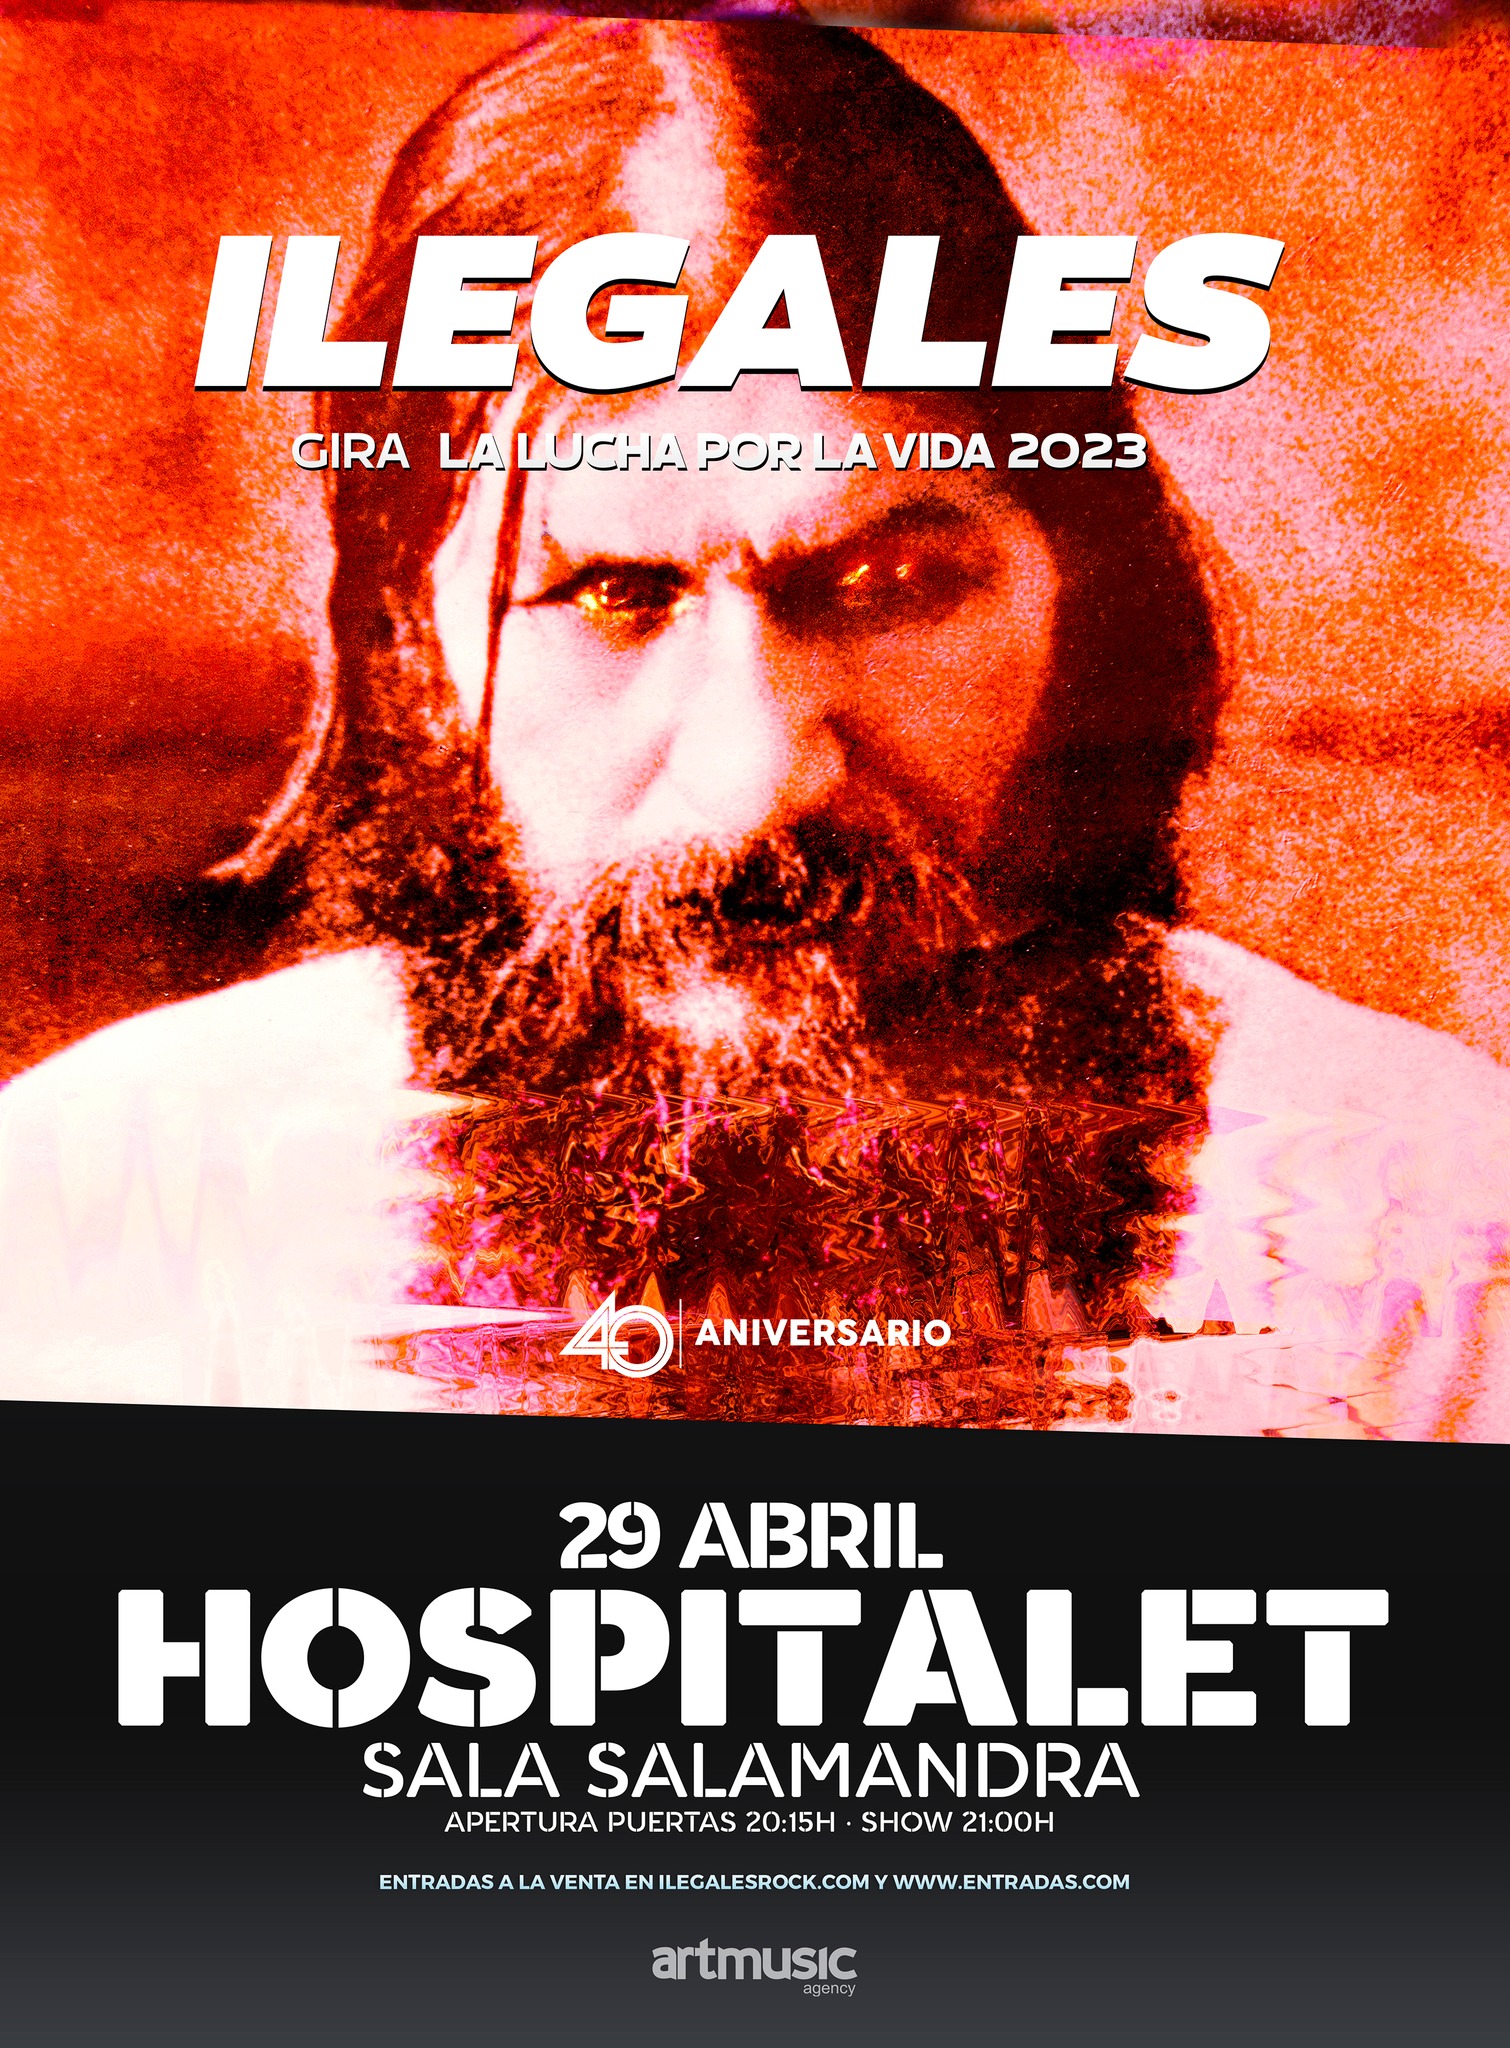 Ilegales estarán actuando el 29 de abril en L’ Hospitalet De Llobregat